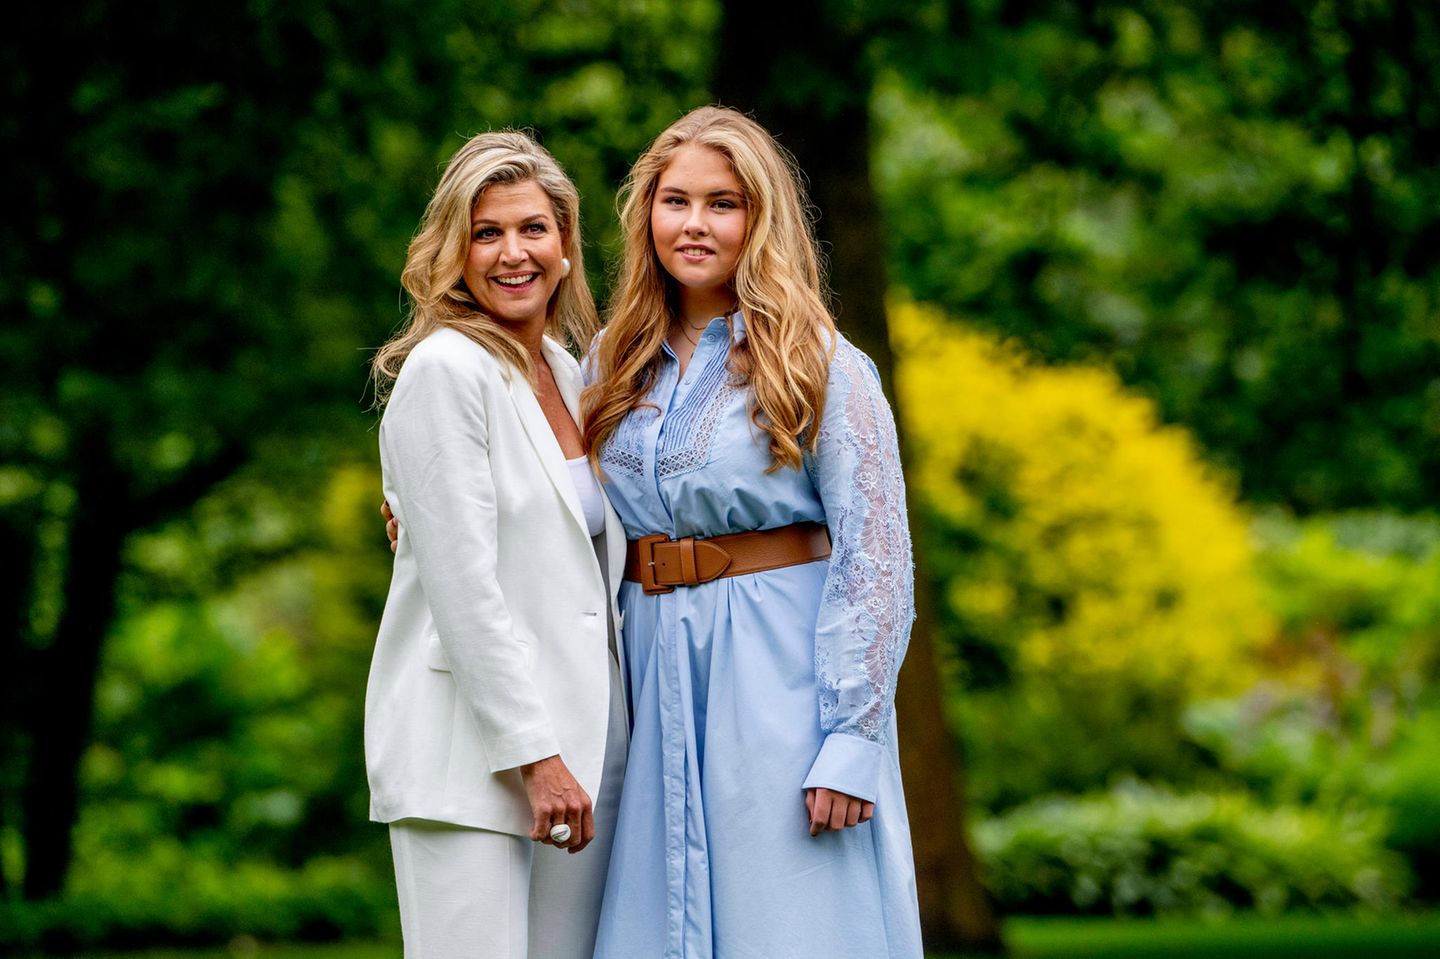 Der Apfel fällt nicht weit vom Stamm: Máxima und Catharina-Amalia sind ein ganz bezauberndes Mutter-Tochter-Duo.